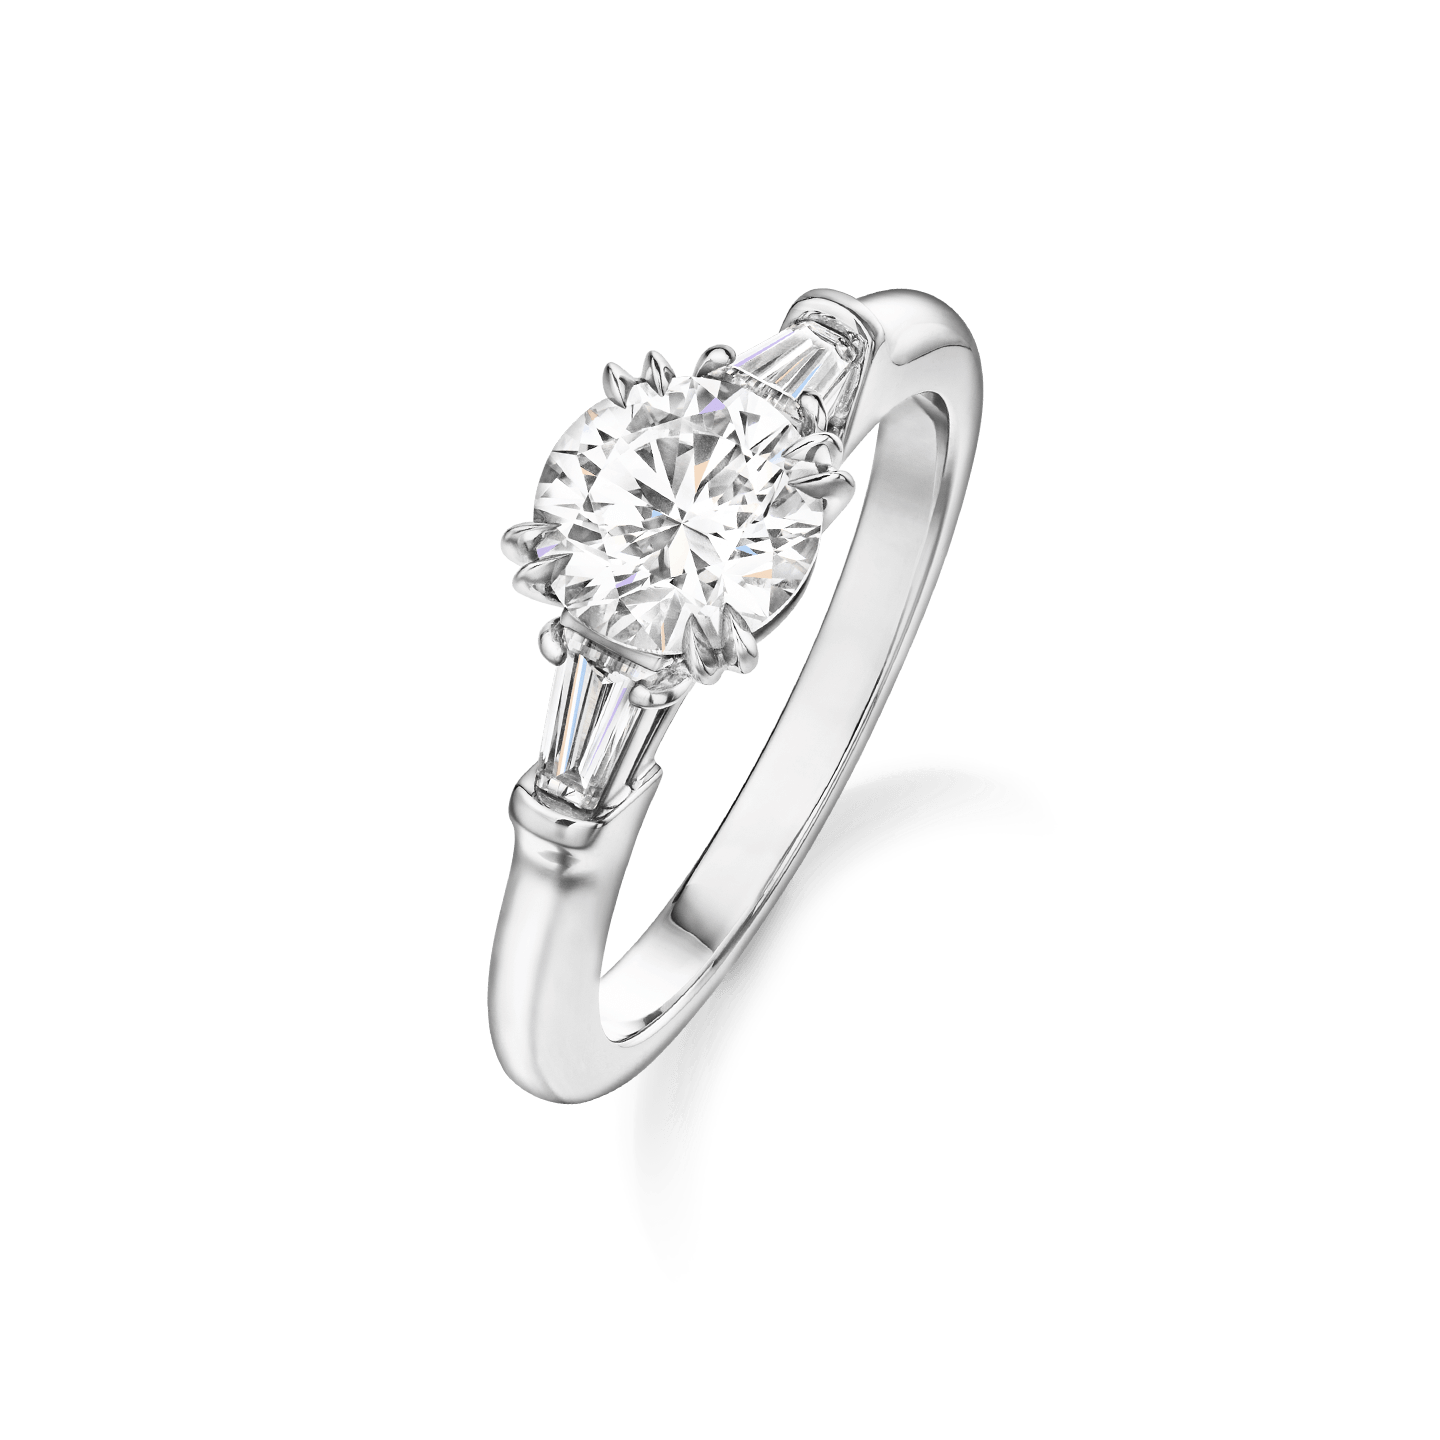 Vue en angle de la Bague de fiançailles Classic Winston diamant taille brillant et diamants latéraux taille baguette